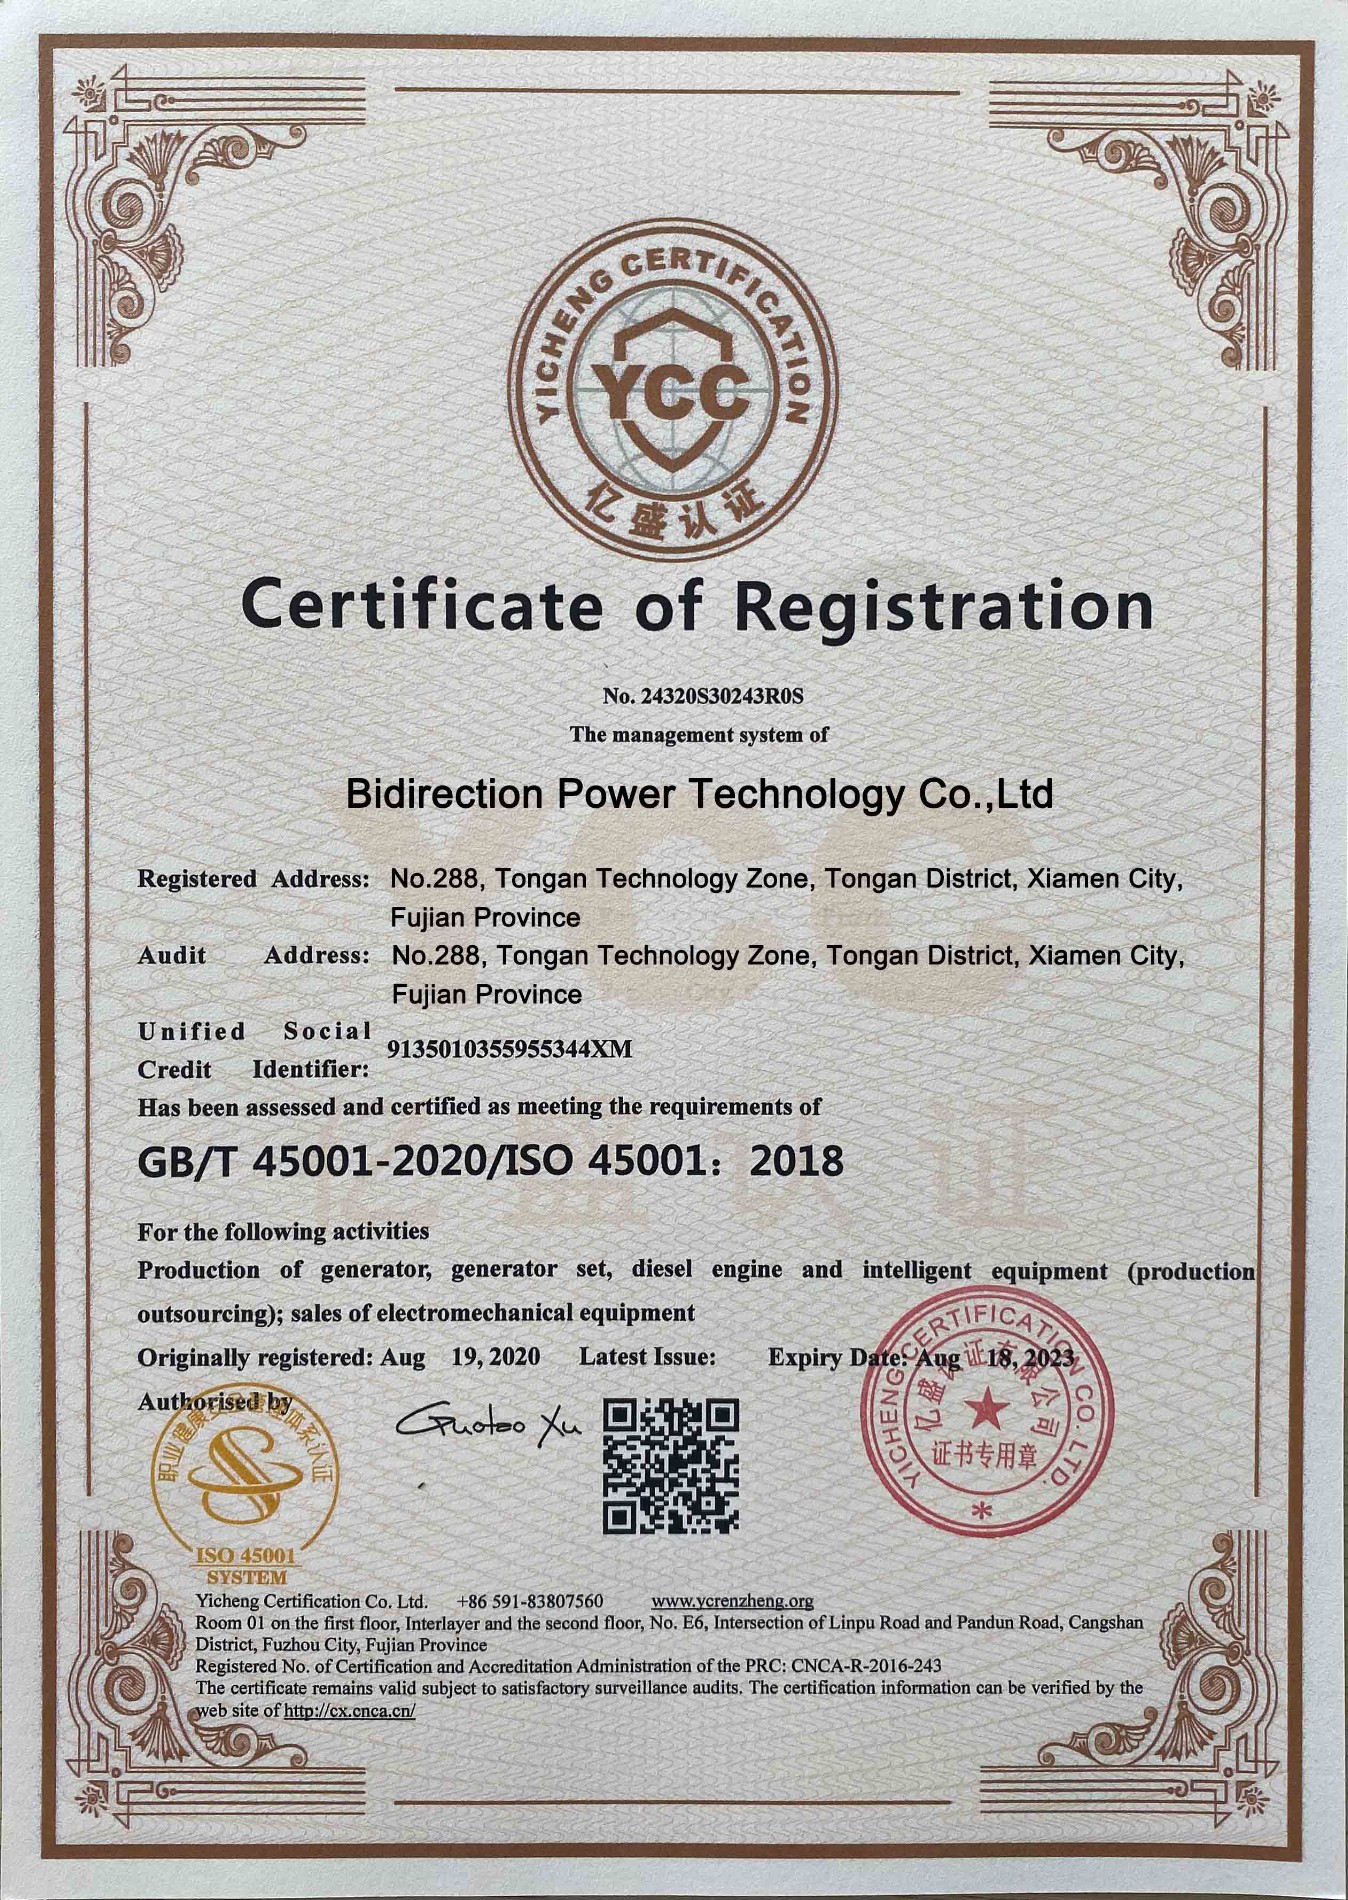 Bidirection Power Technology godkjent av sertifikat for registrering GB / T45001-2020 / ISO 45001: 2018